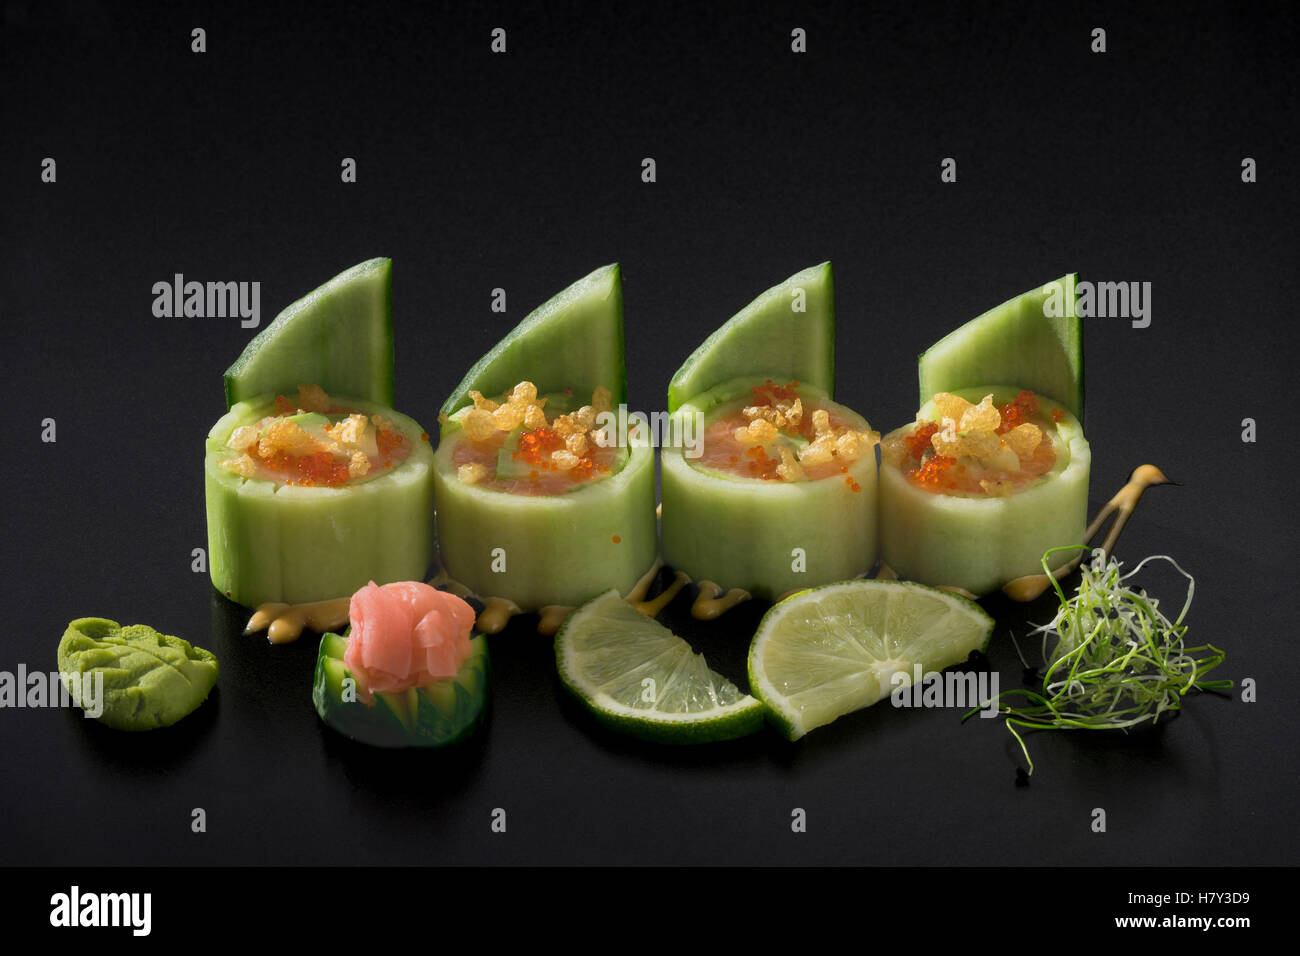 Dans les concombres au thon Sushi décoré de salade d'algues et wasabi Banque D'Images